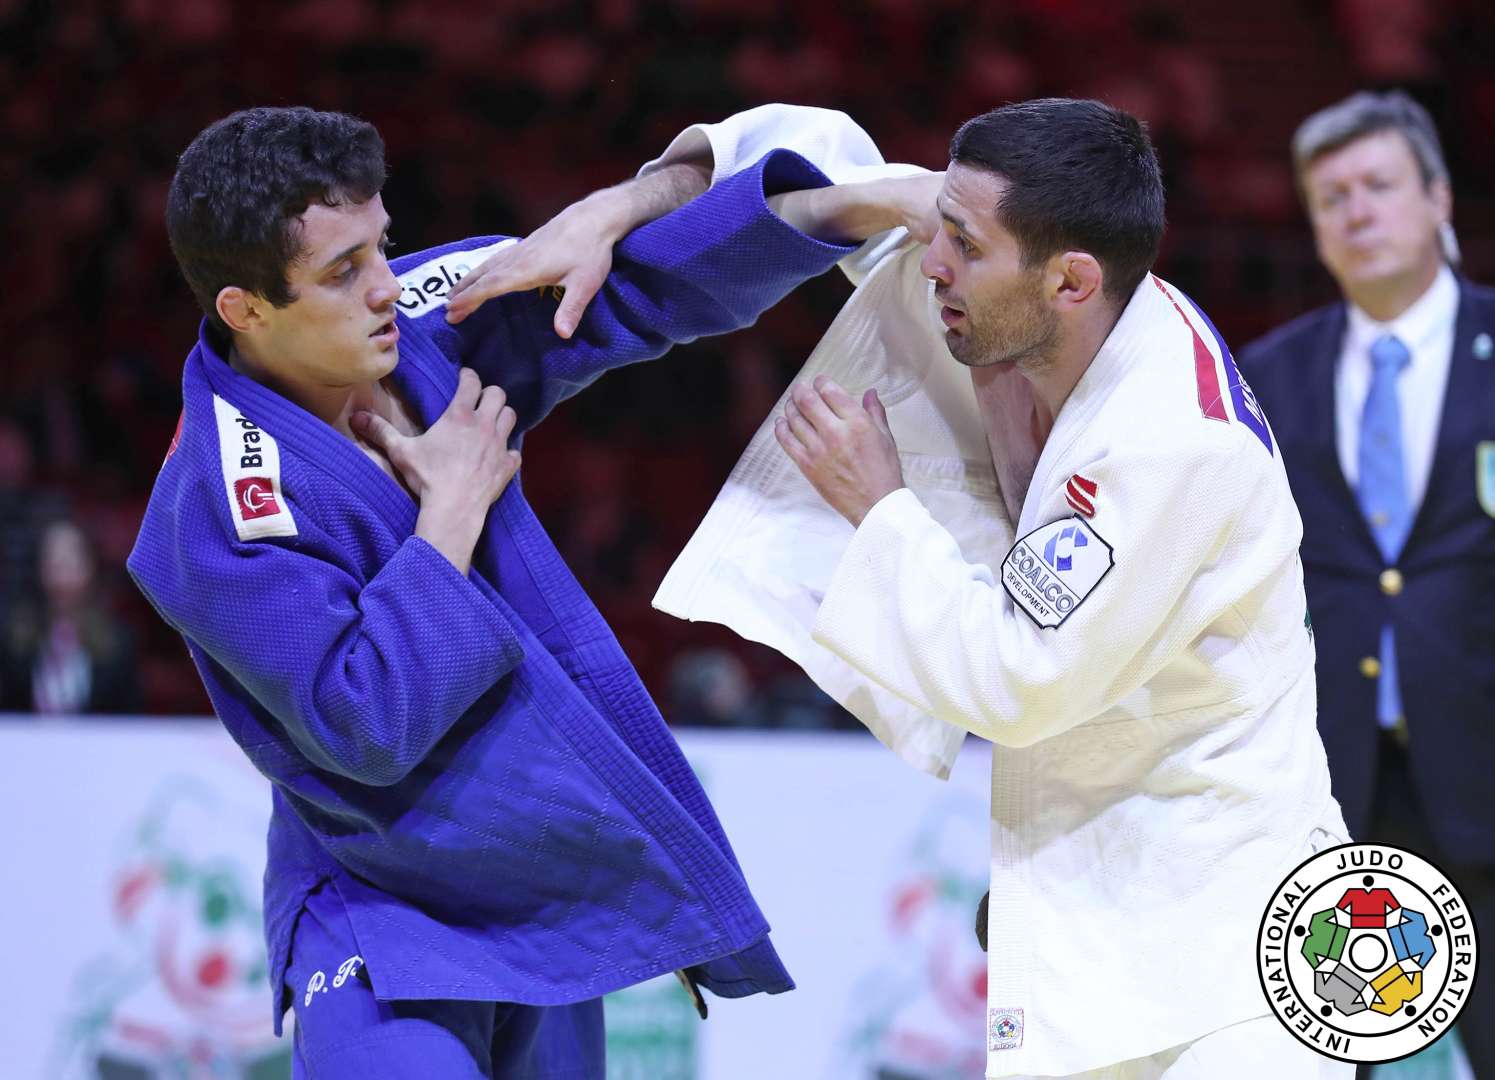 Judoca itajaiense da seleção participa de treinamento internacional em SP